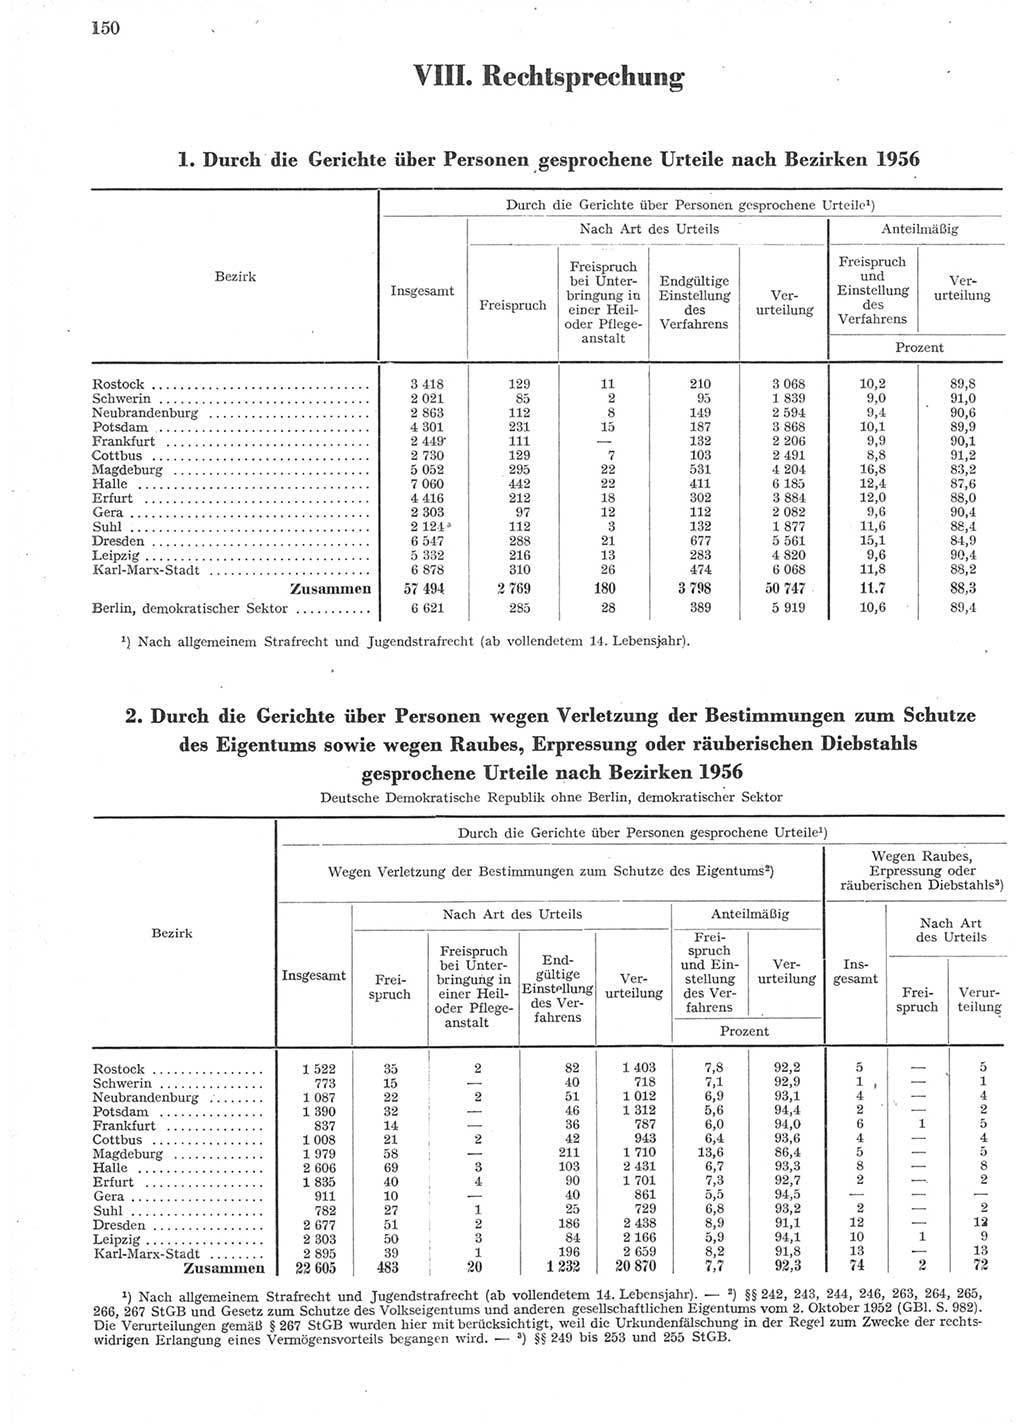 Statistisches Jahrbuch der Deutschen Demokratischen Republik (DDR) 1957, Seite 150 (Stat. Jb. DDR 1957, S. 150)